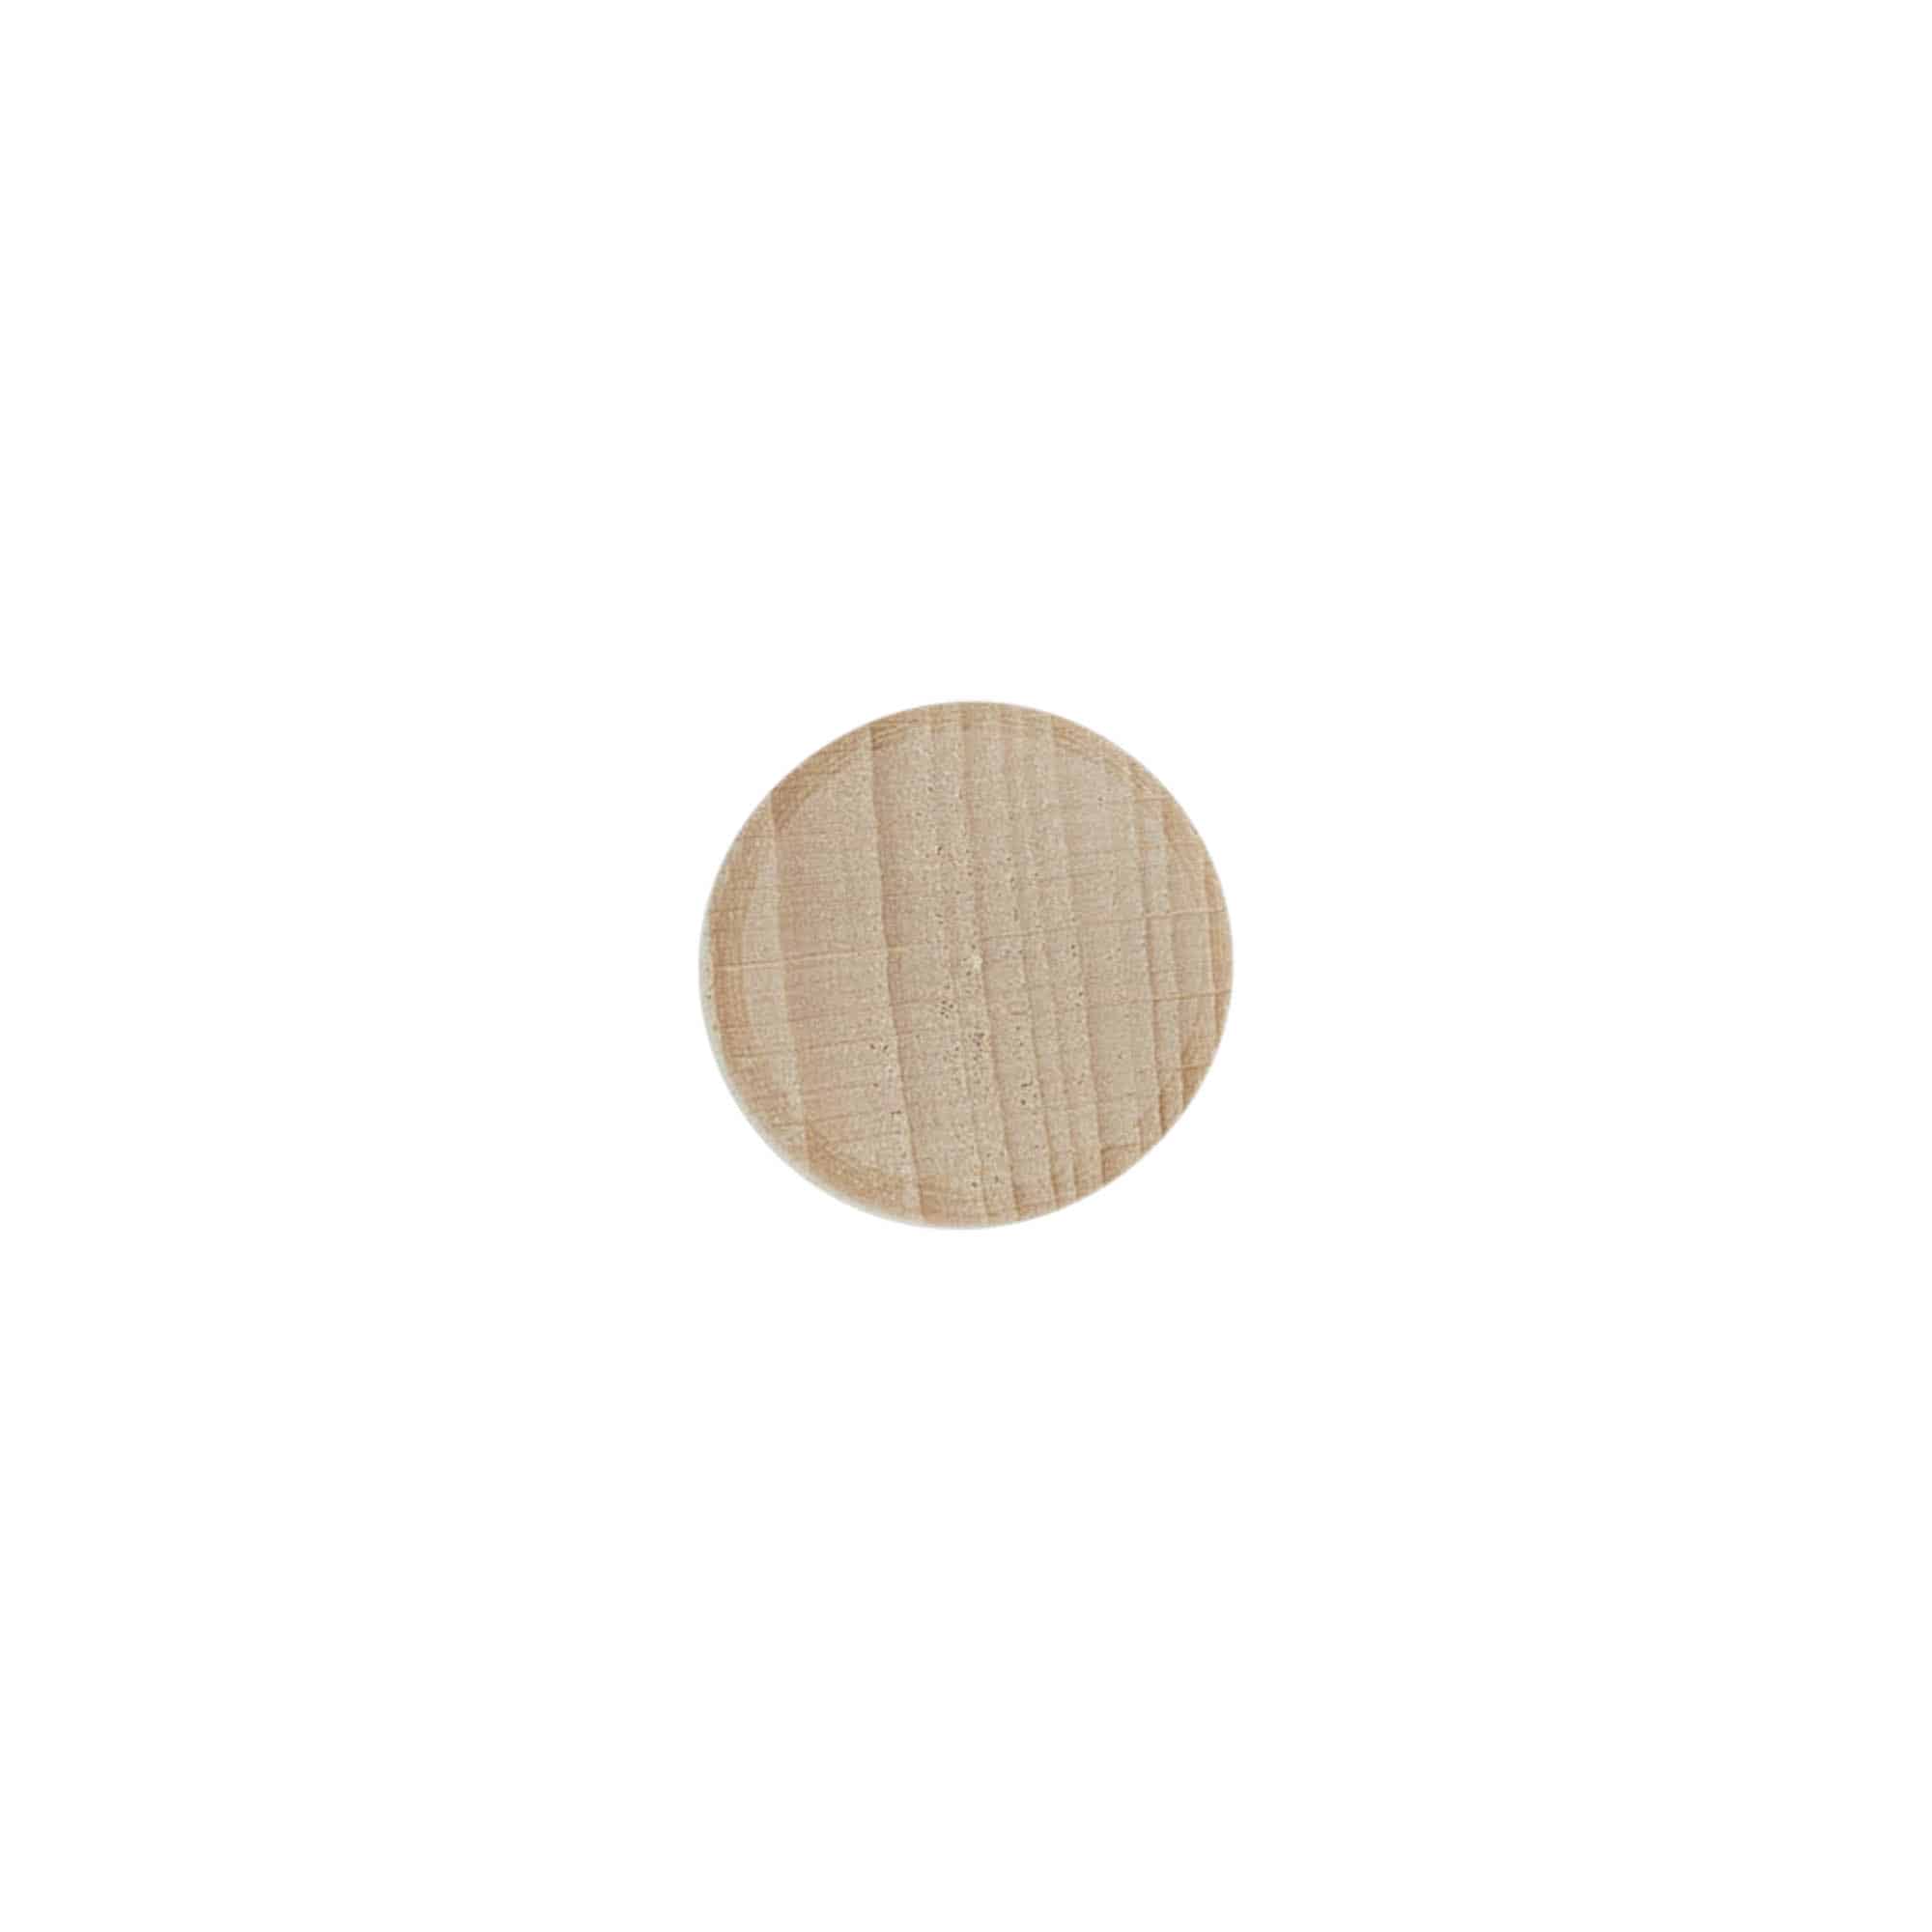 Griffkorken 16 mm, Kunststoff-Holz, mehrfarbig, für Mündung: Kork